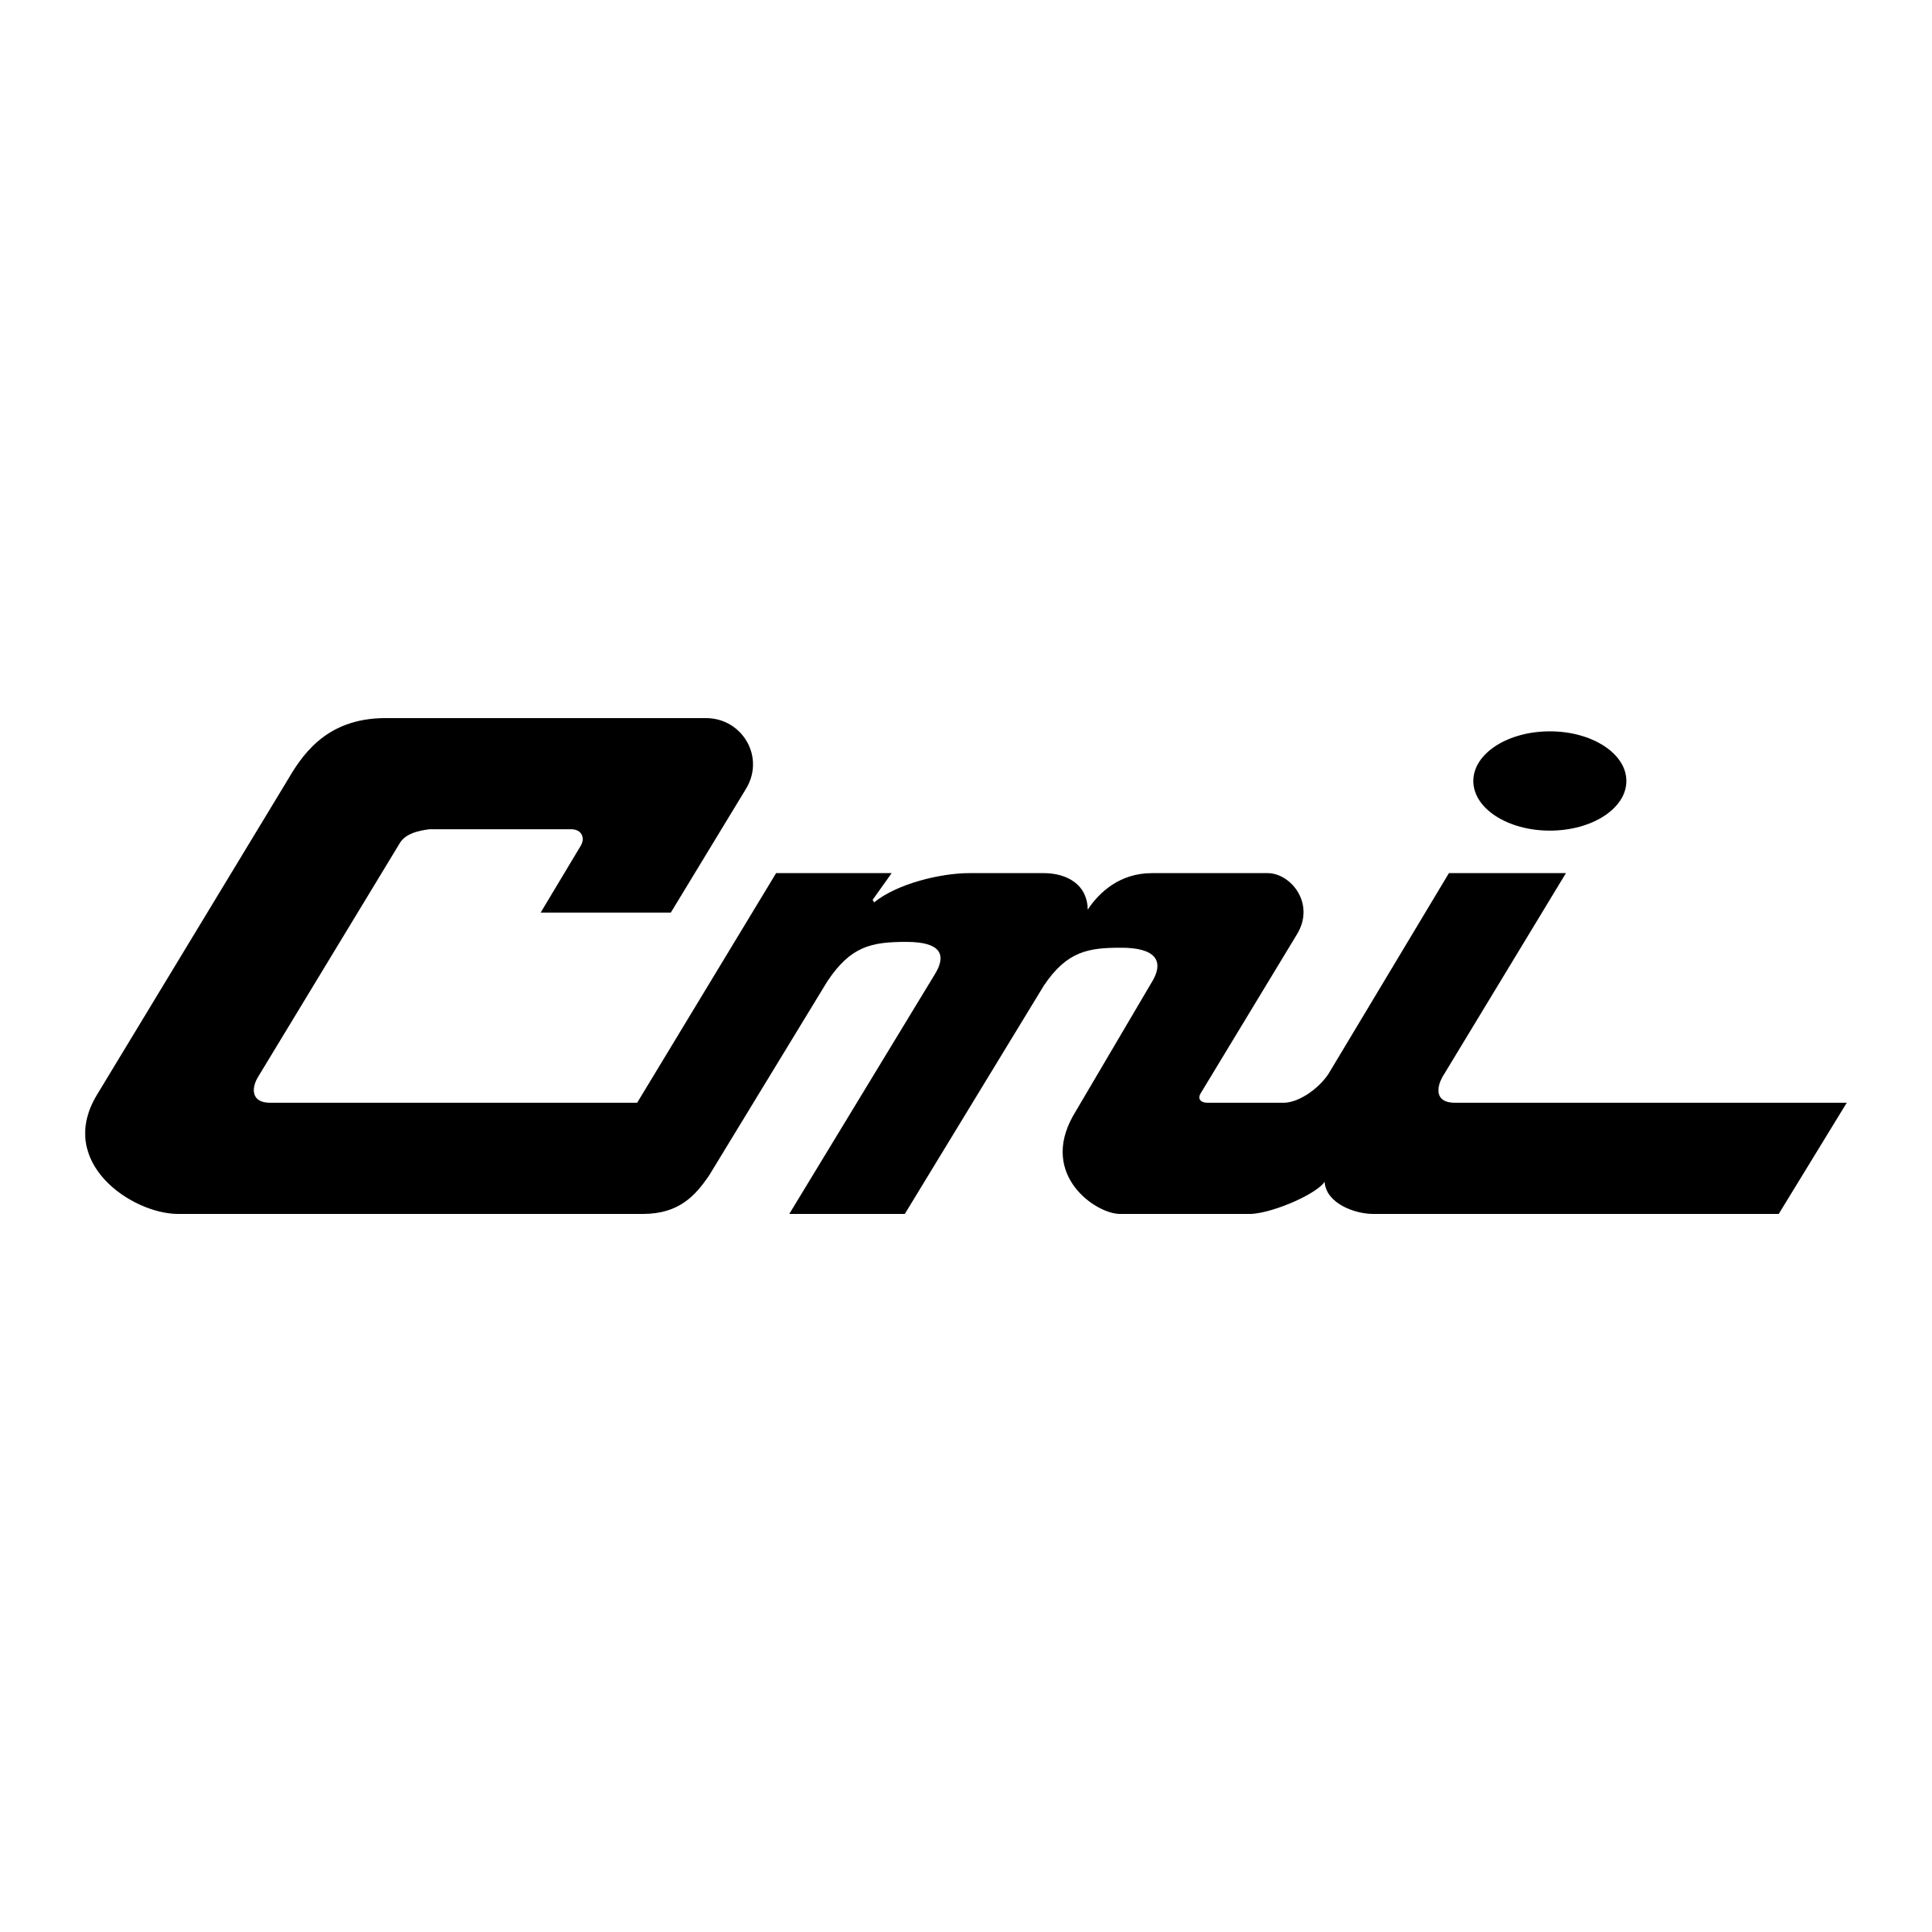 CMI Logo - Cmi Logo PNG Transparent & SVG Vector